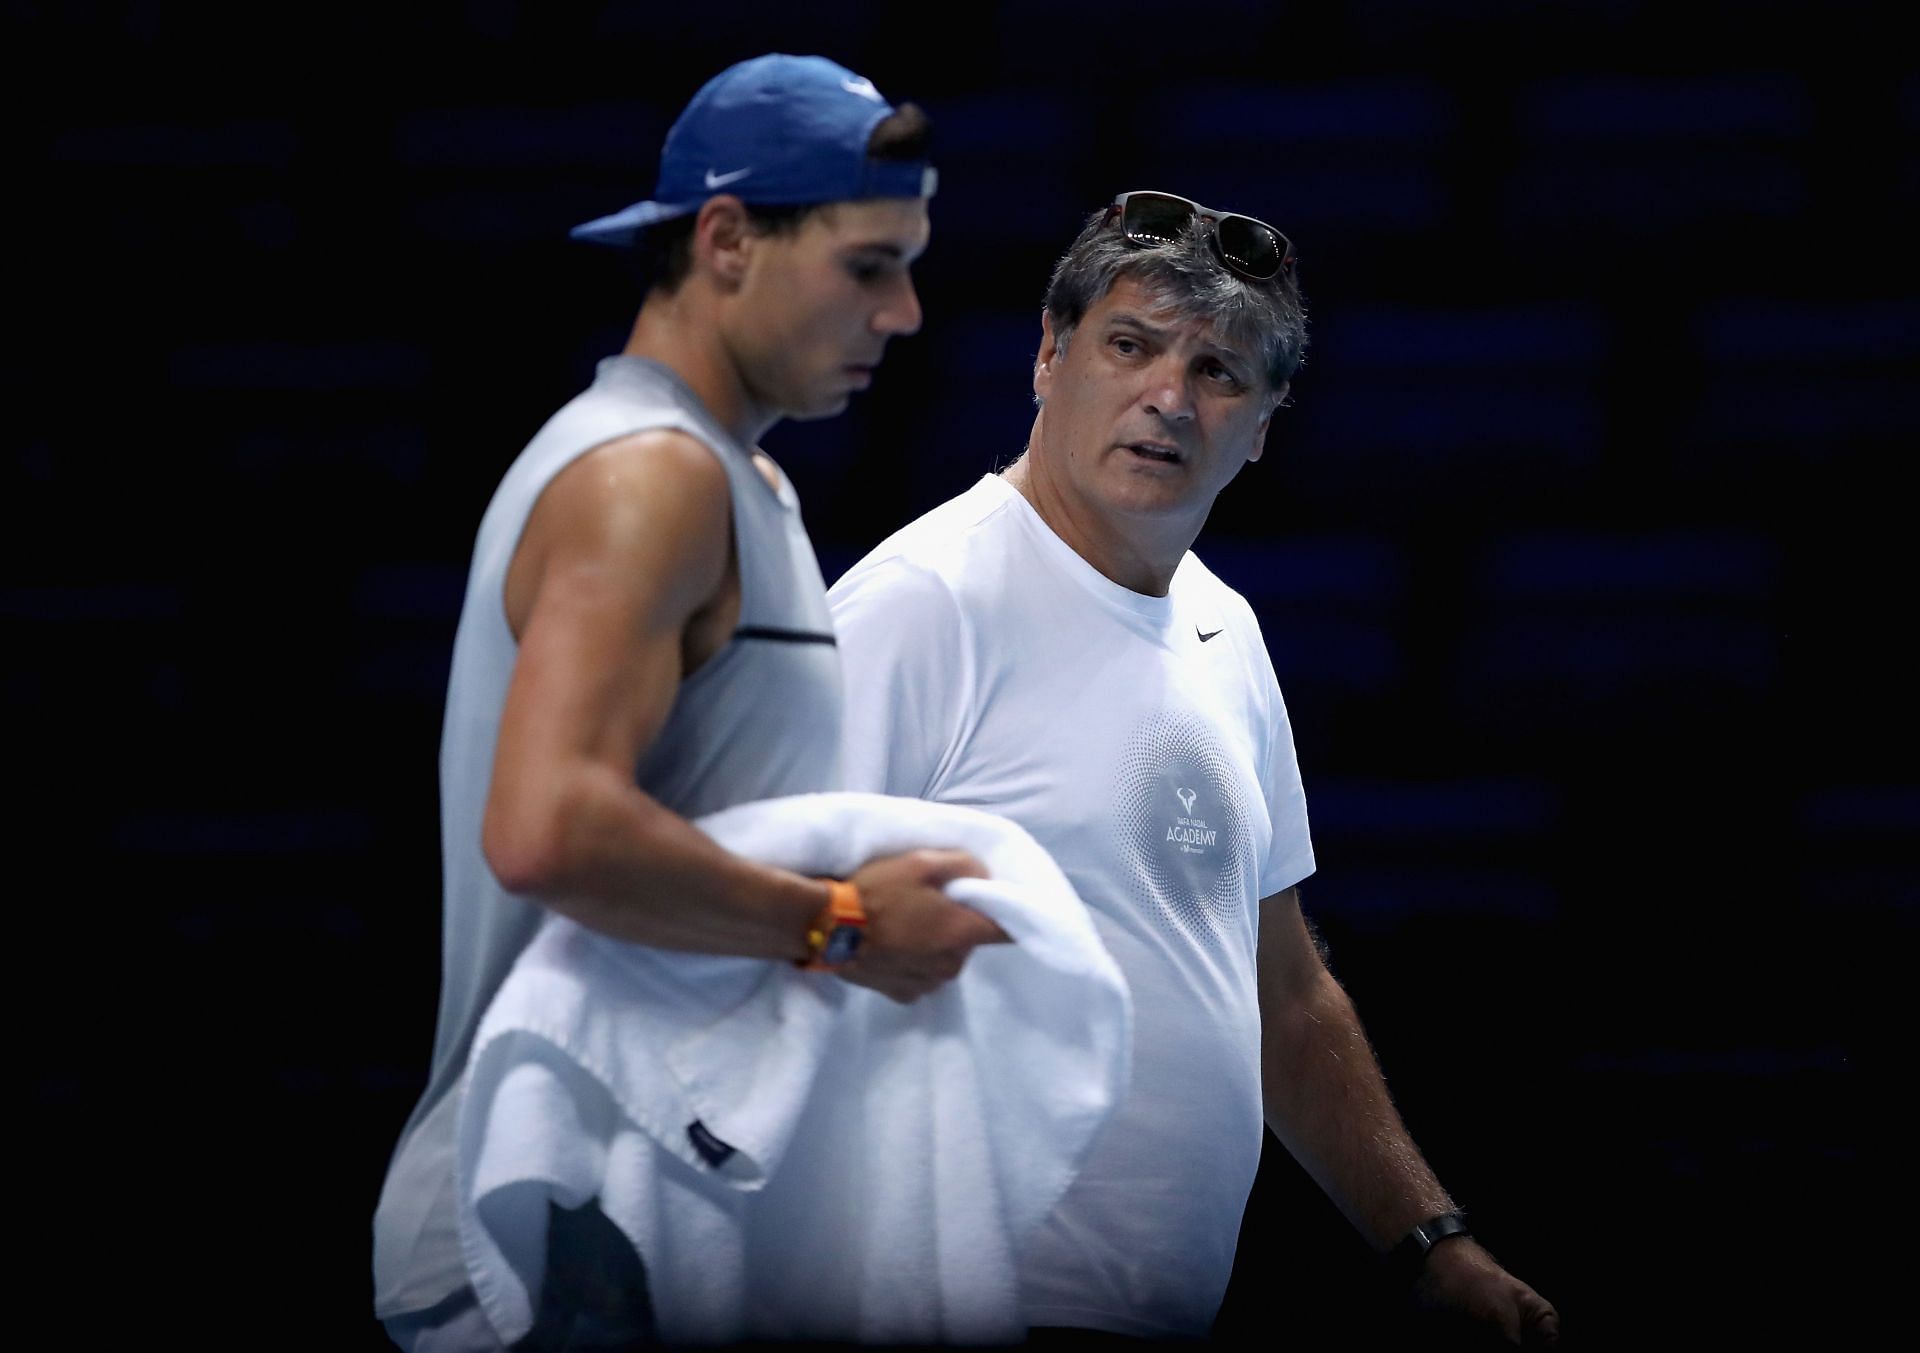 Rafael Nadal and Toni Nadal at the 2017 Nitto ATP World Tour Finals